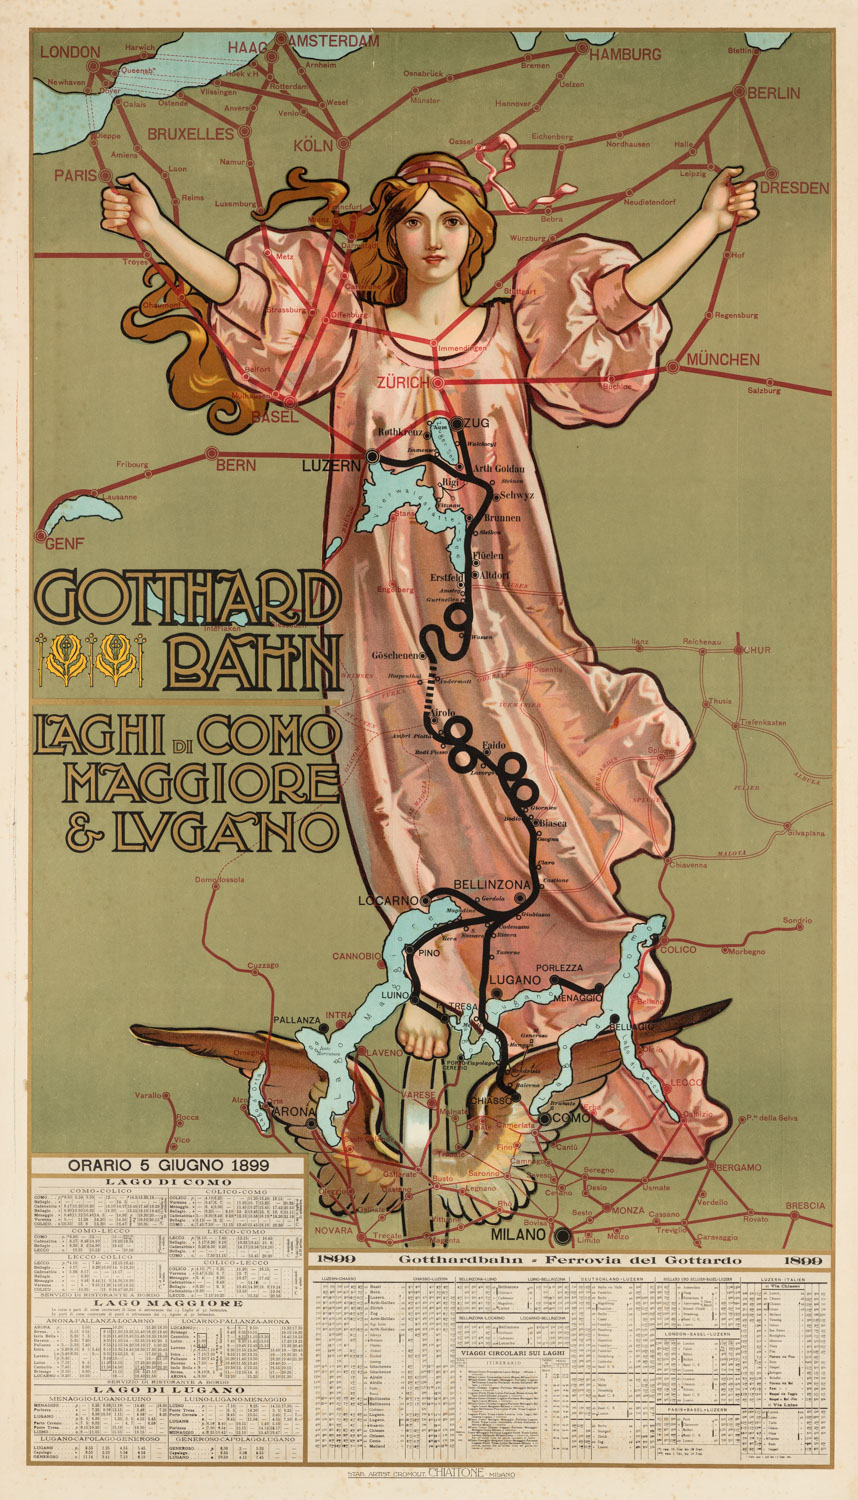 Gabriele Chiattone, 'Gotthard-Bahn. Laghi di Como, Maggiore e Lugano', 1902, cromolitografia